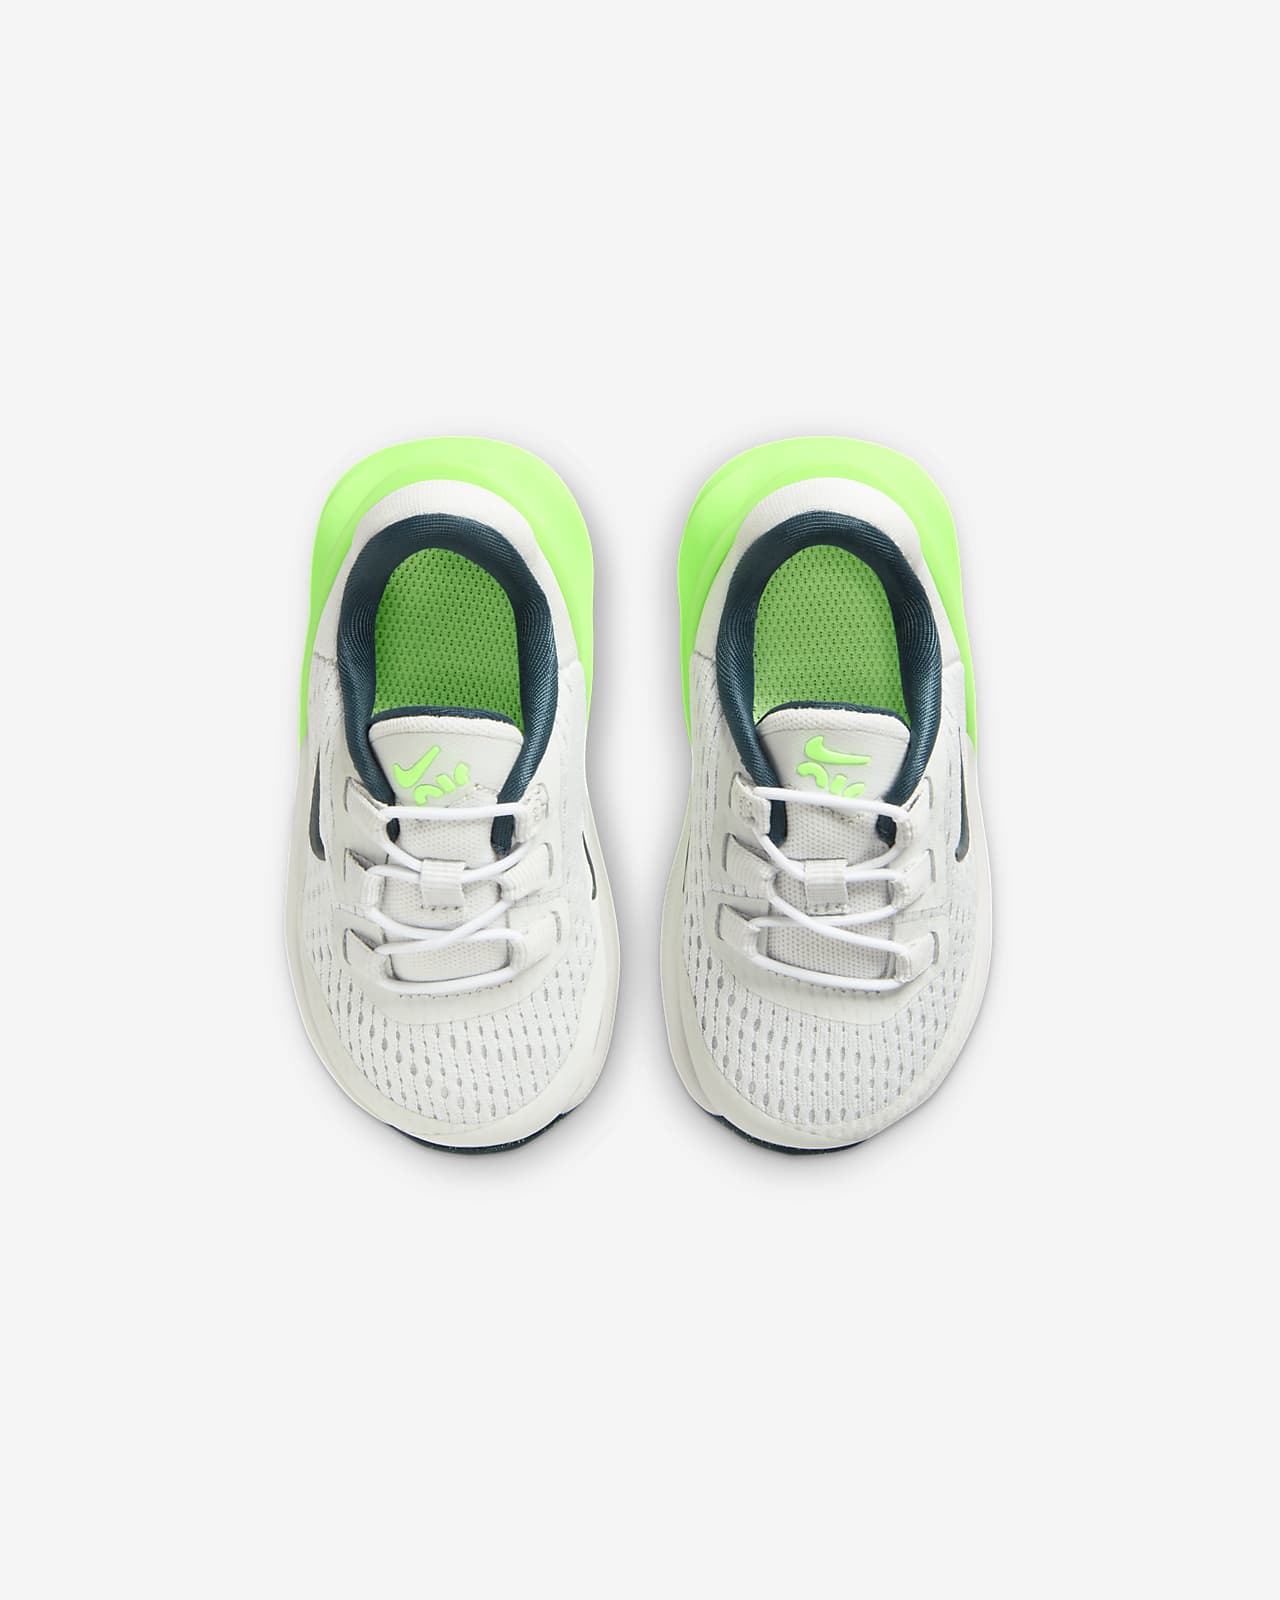 Nike Air Max 270 Baby/Toddler Shoes. Nike LU